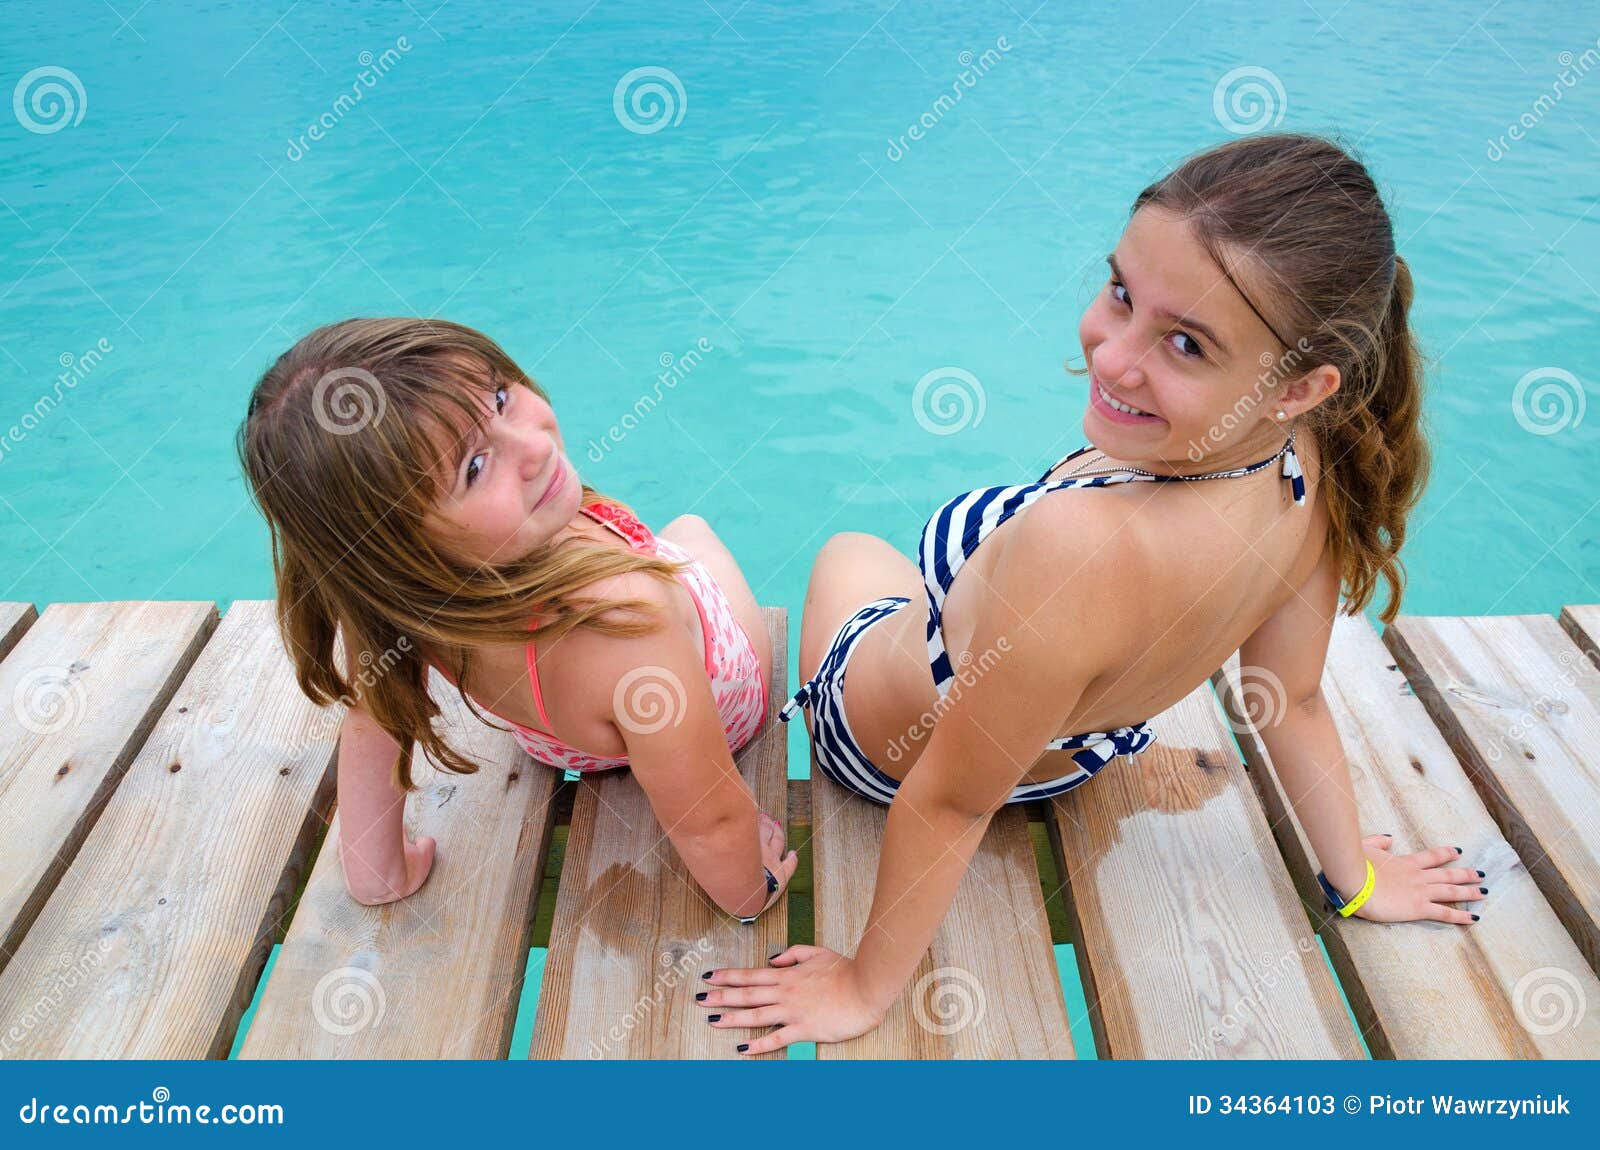 Middle School Girls Bikini